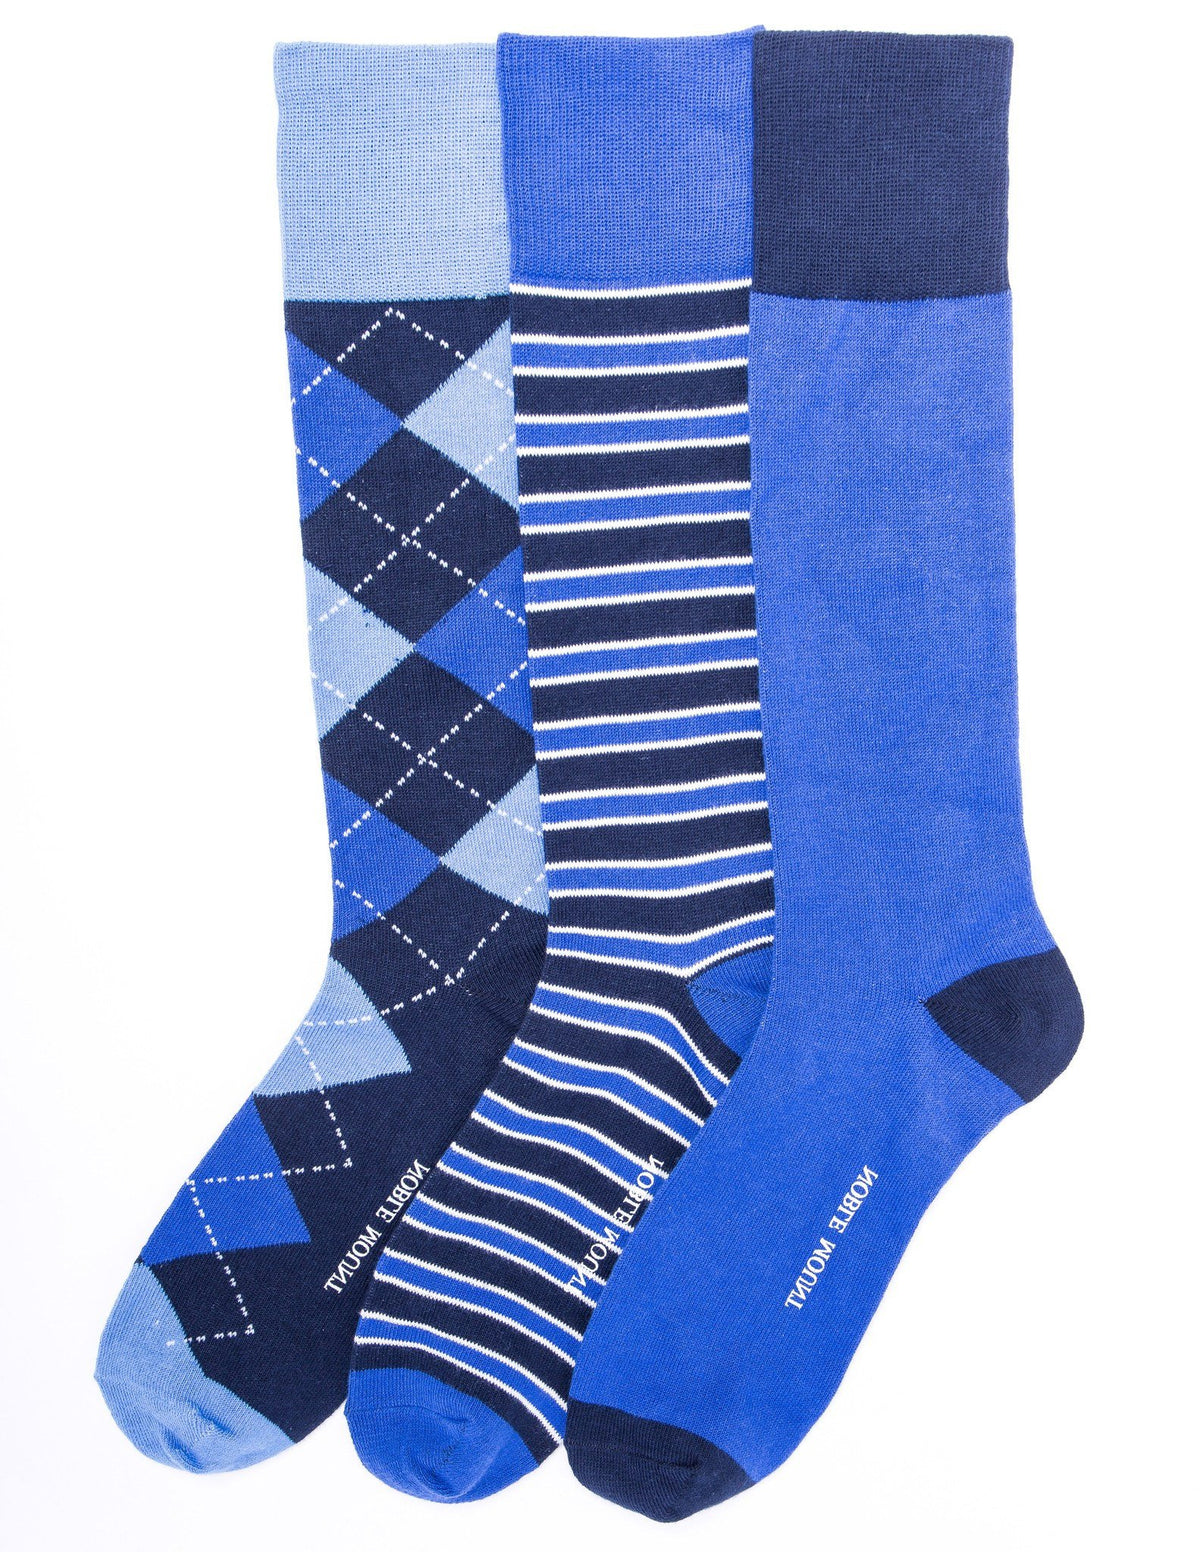 Men's Combed Cotton Dress Socks 3-Pack - Set C7